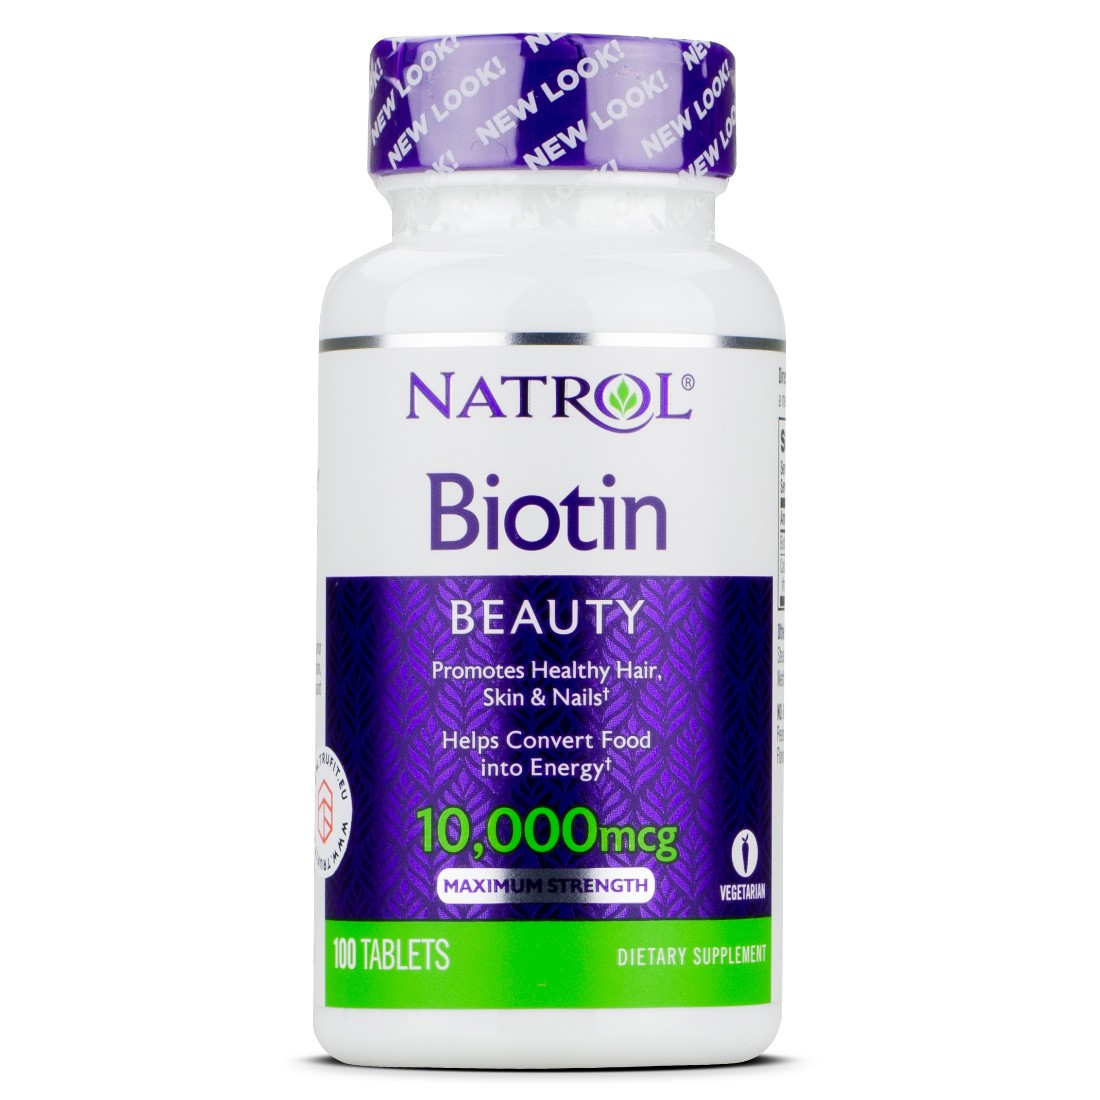 Viên uống hỗ trợ rụng tóc, giúp mọc tóc Natrol Biotin Beauty 10,000mcg 100 viên (Mỹ)